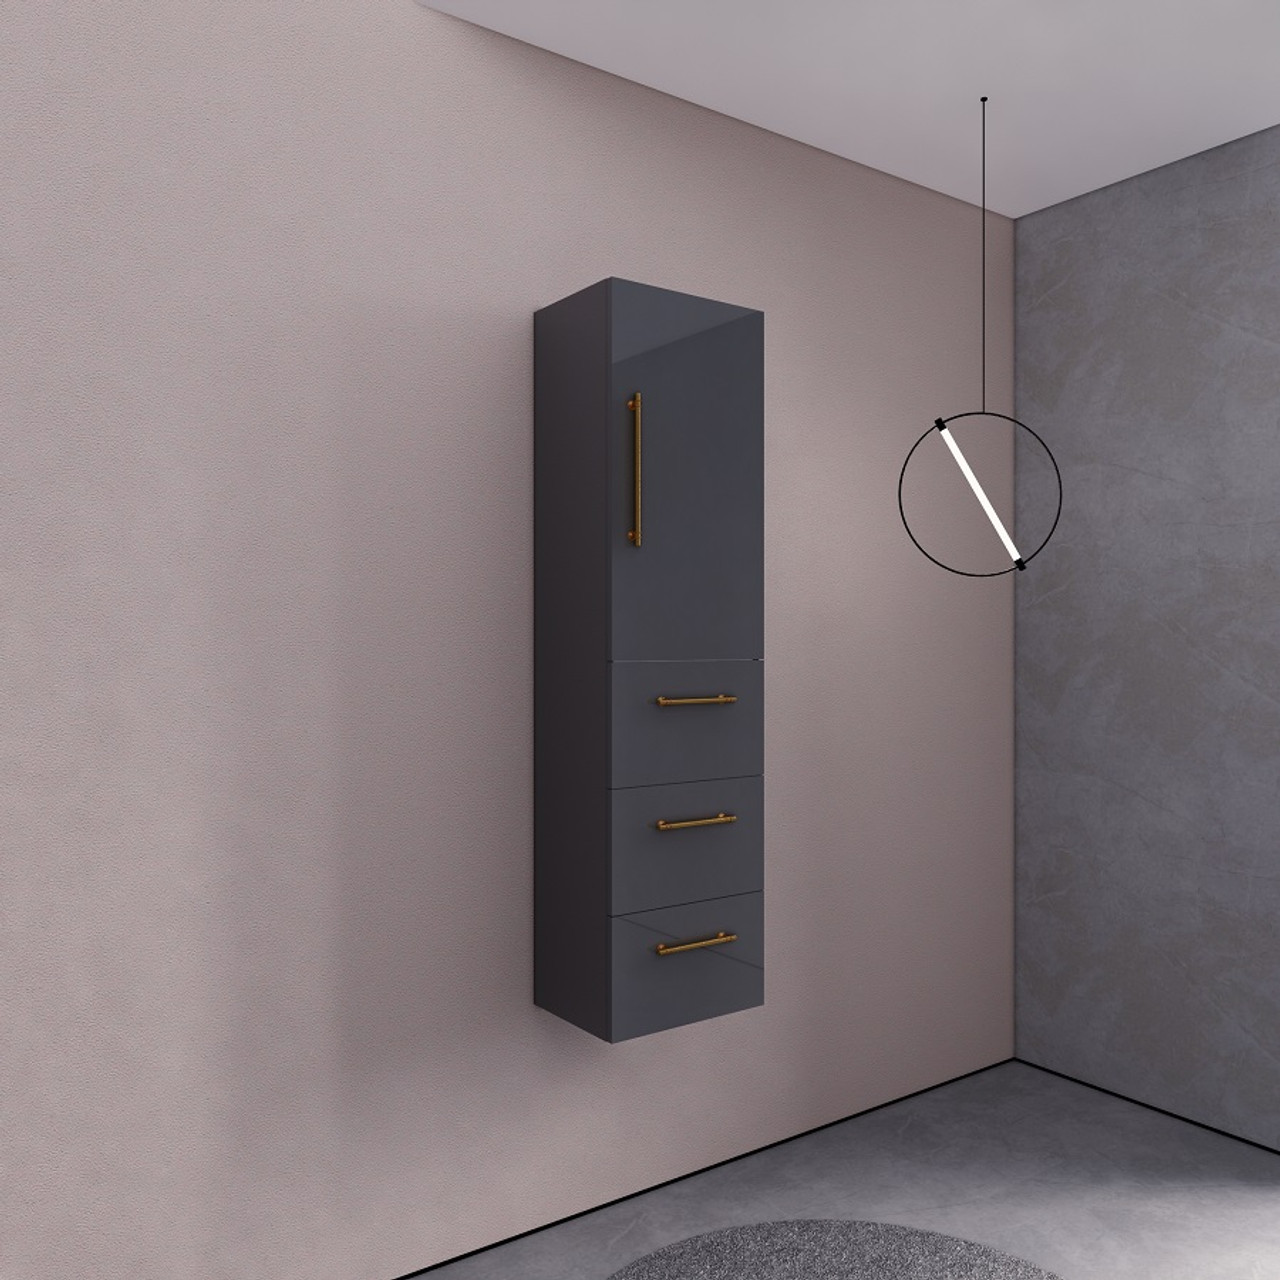 Elsa Side Linen Cabinet or Linen Tower for Bathroom or Bedroom | Small Bathroom Storage Space Ideas - Moreno Bath Bathroom Vanities